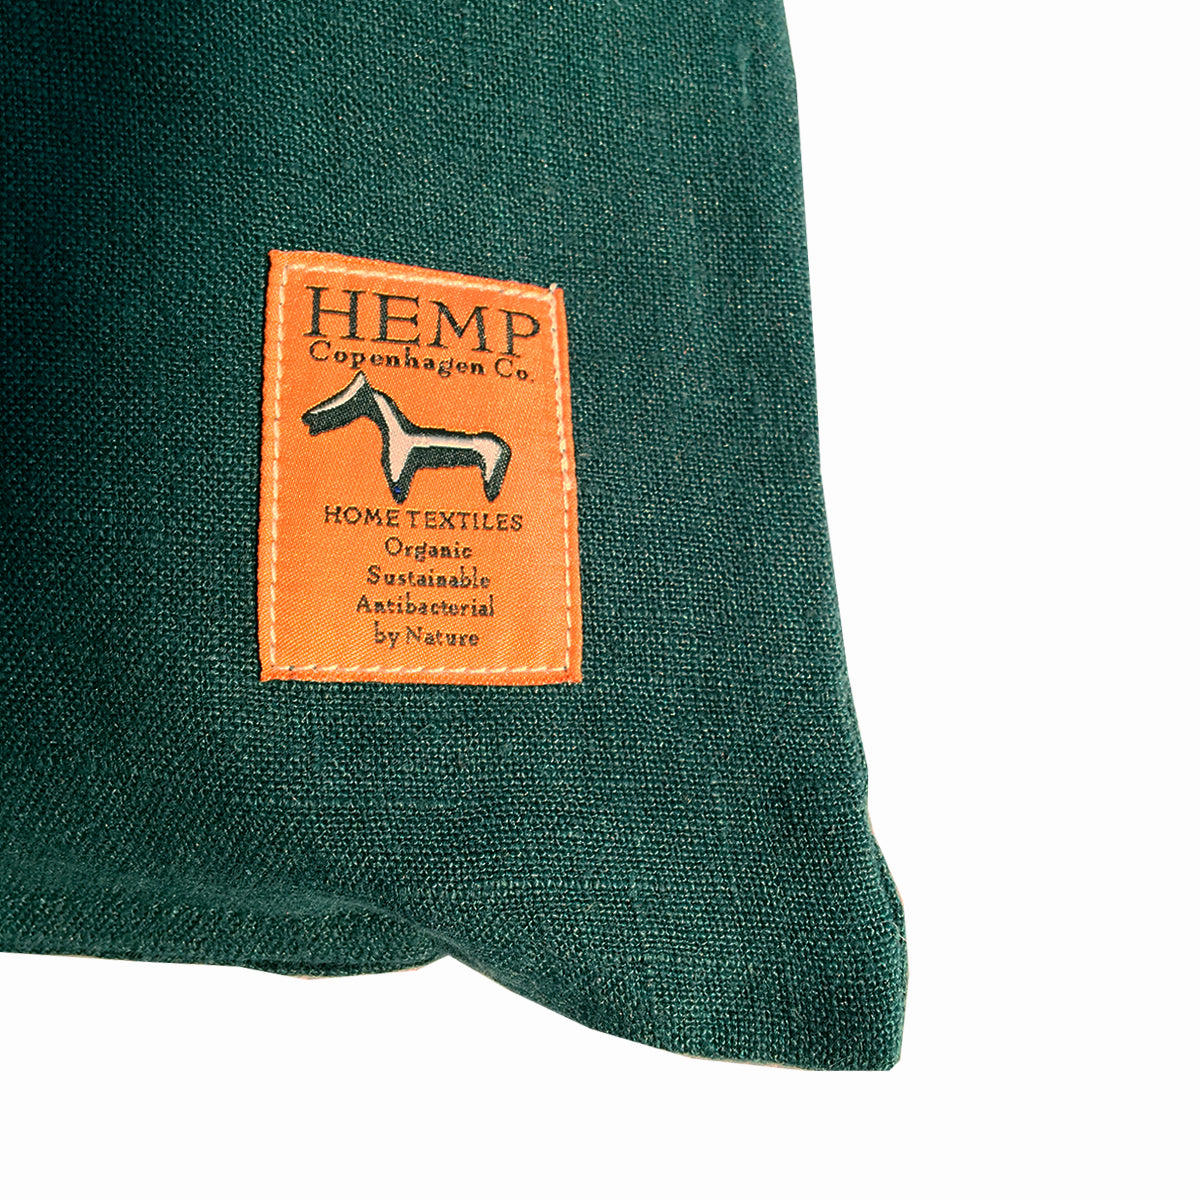 Hemp Copenhagen Co. Throw-pillow Cover 100% Hemp Forest Green